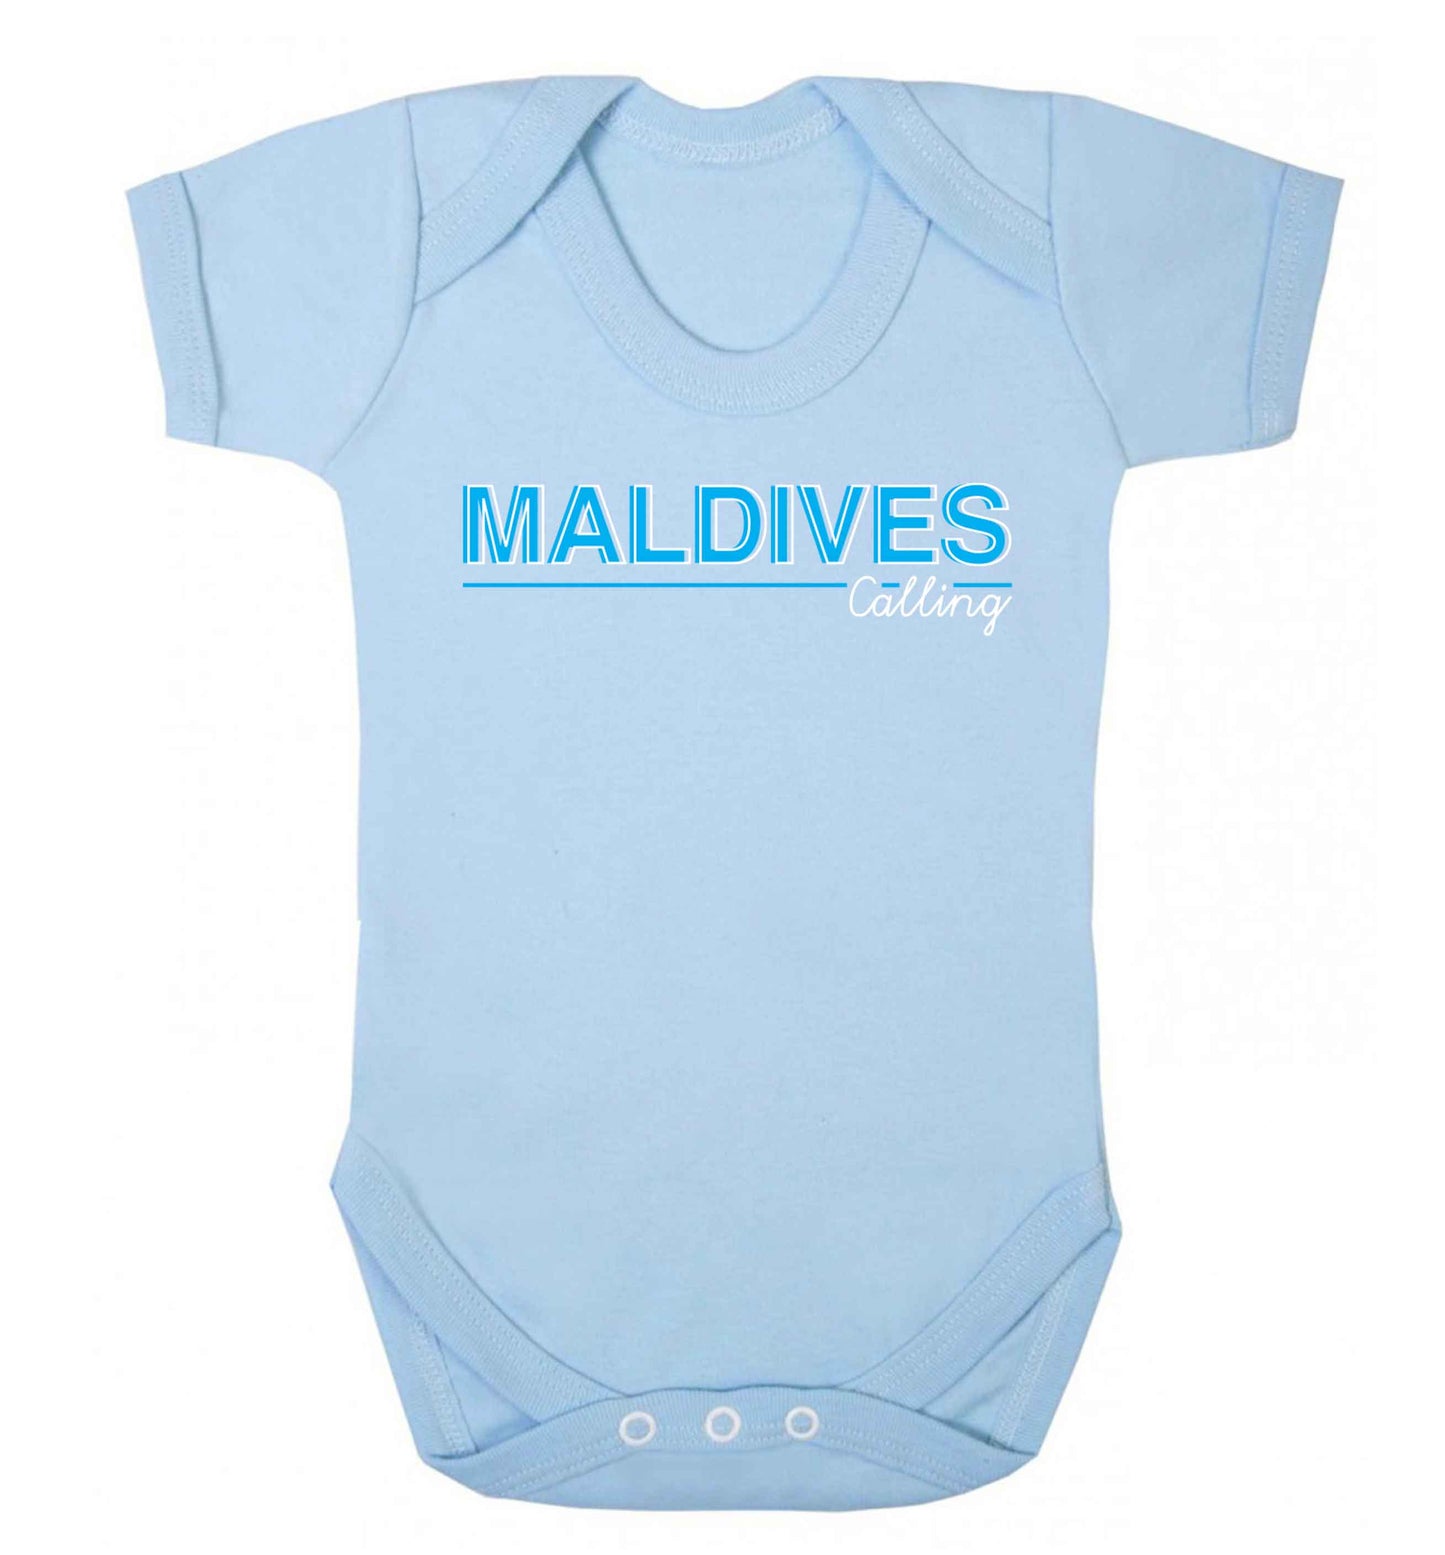 Maldives calling Baby Vest pale blue 18-24 months